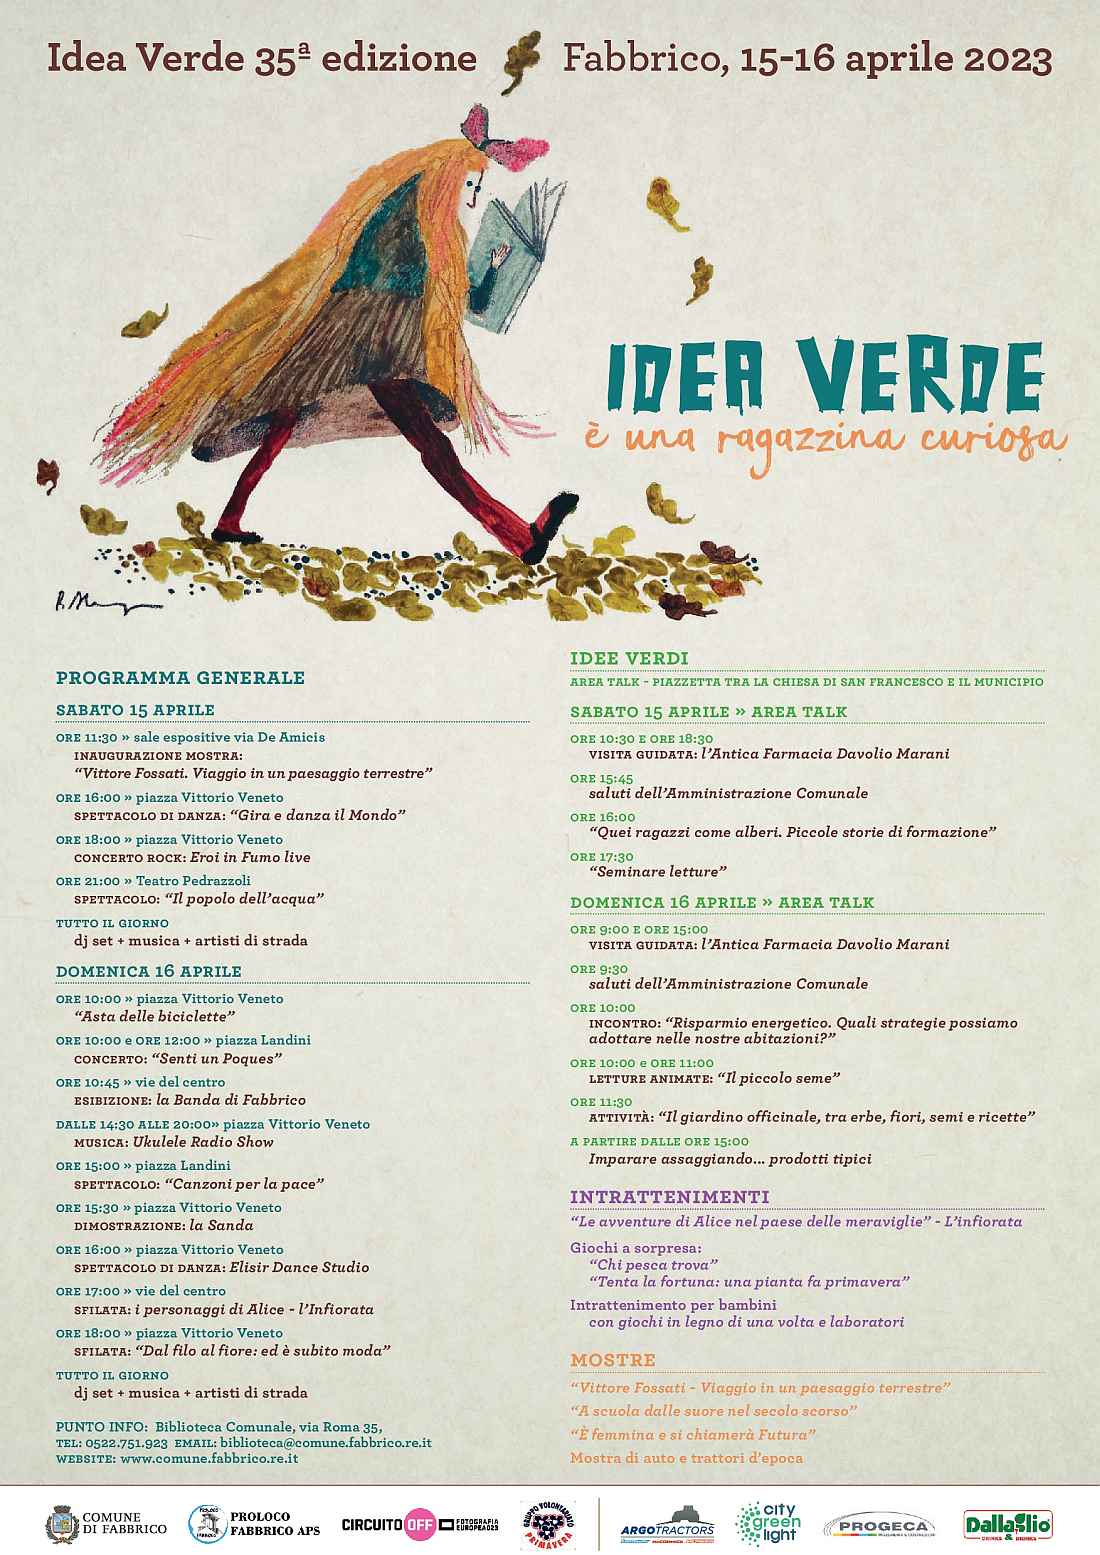 Fabbrico (RE)
"Idea Verde - 35^ edizione"
15-16 Aprile 2023